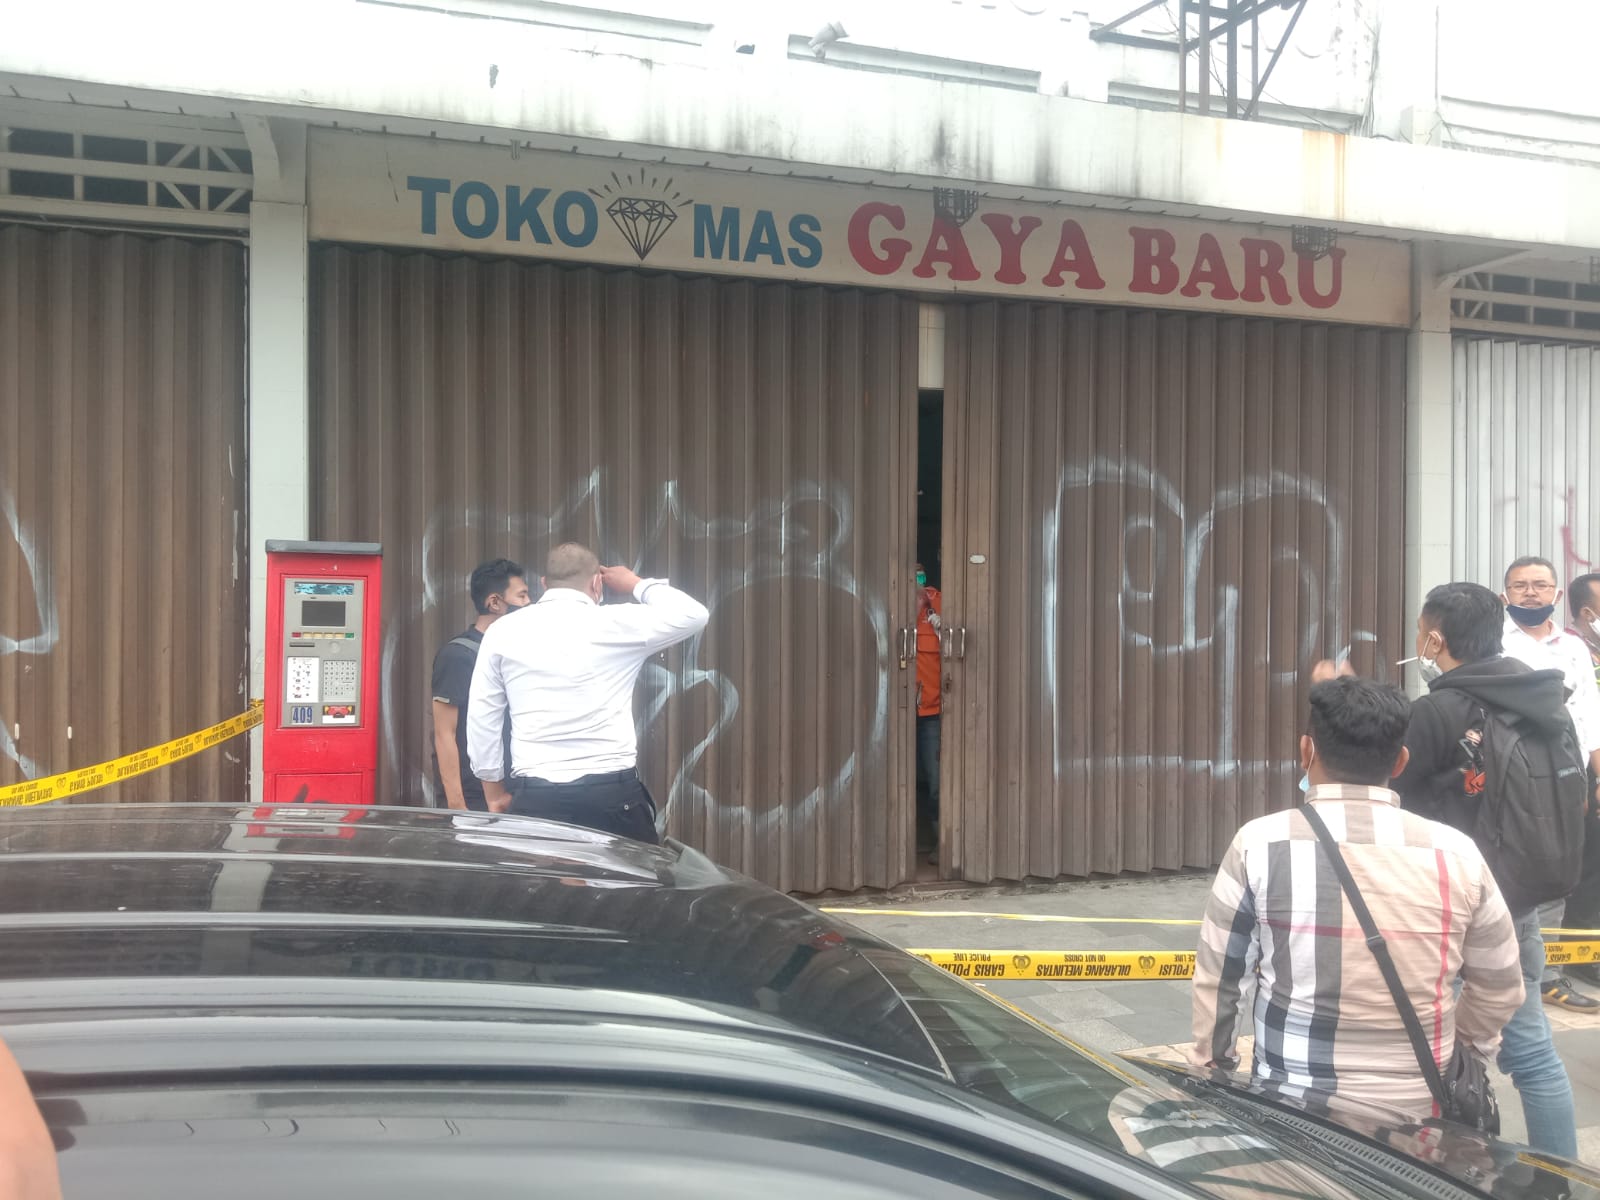 Lokasi kejadian perampokan dan pembunuhan di sekitar Jl. Ahmad Yani (Kosambi), Kota Bandung.